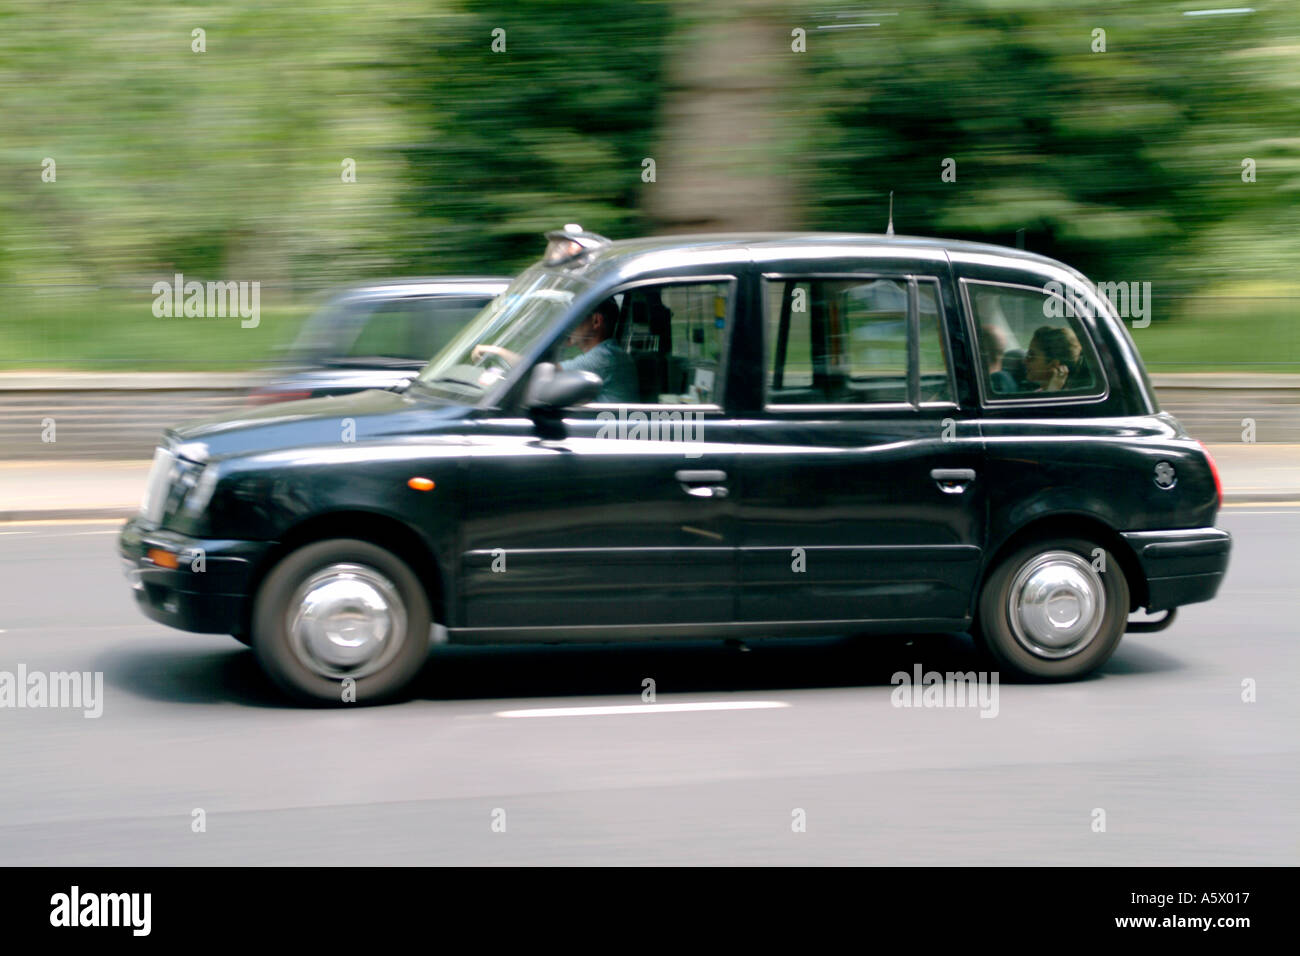 Einem schwarzen Taxi in London. Stockfoto